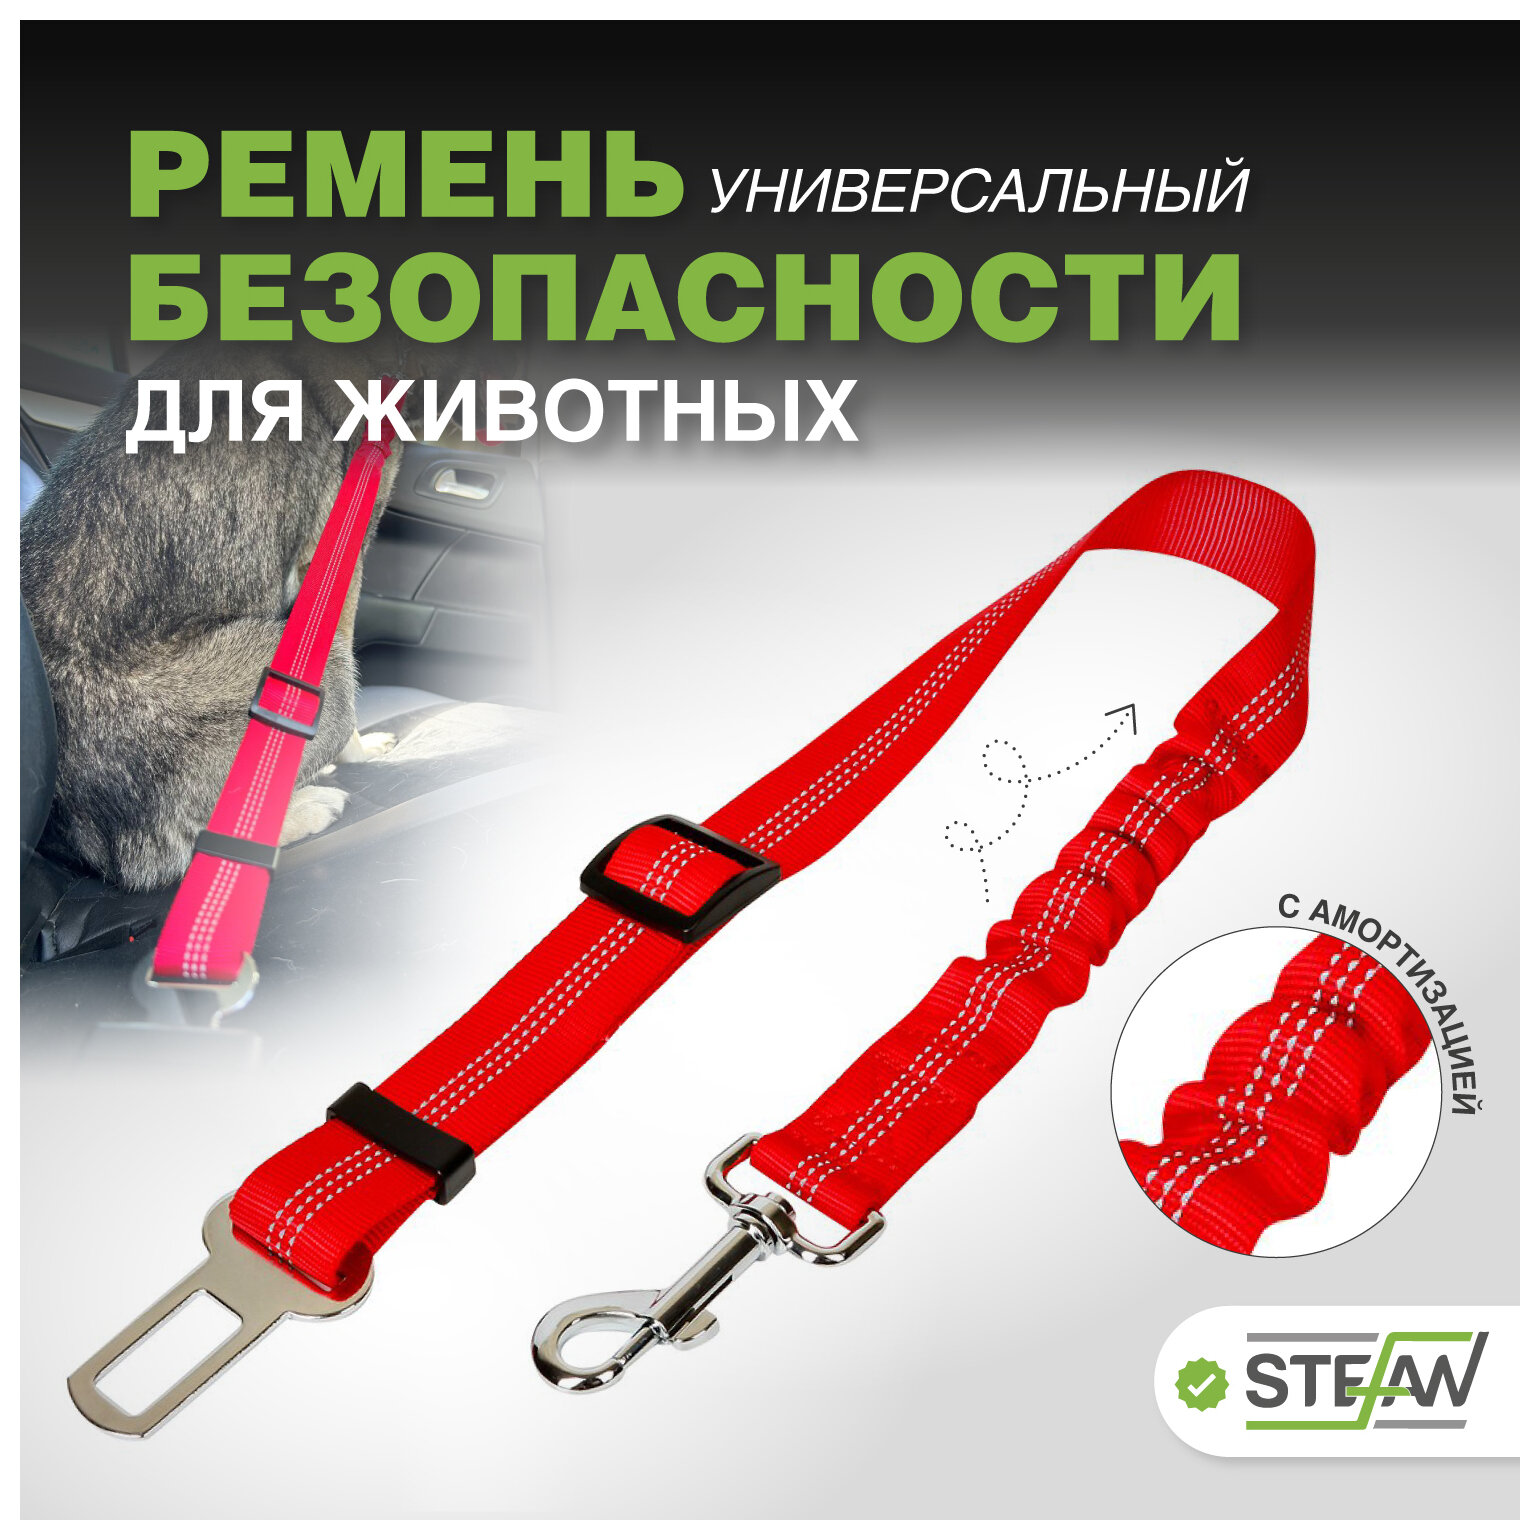 Автомобильный ремень безопасности STEFAN (Штефан) для животных с амортизацией, PSB-2001RD красный 53-74x2,5см